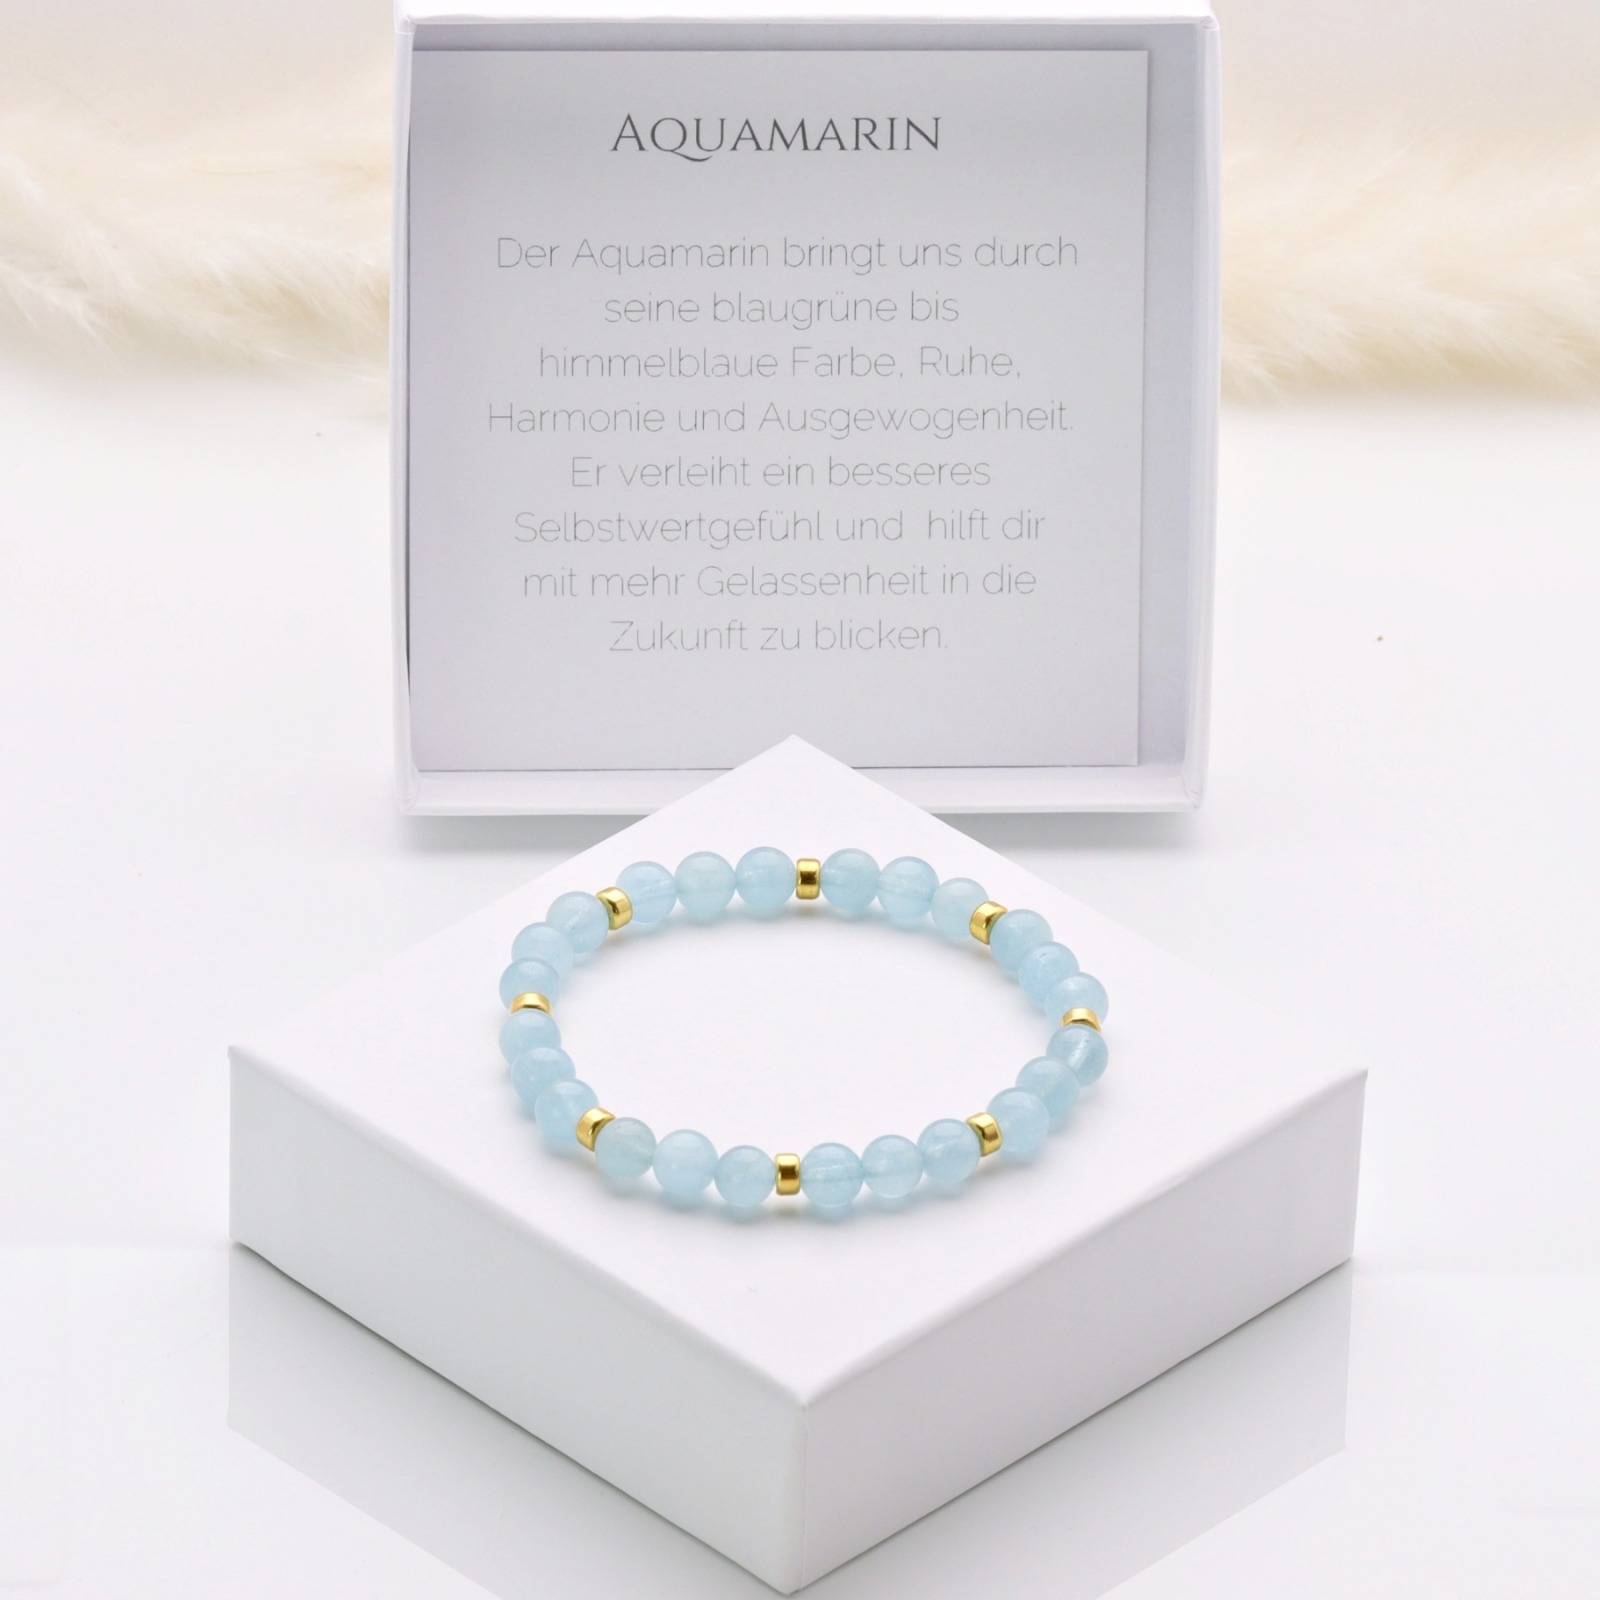 Armband aus Aquamarin, schönes Geschenk zum Geburtstag